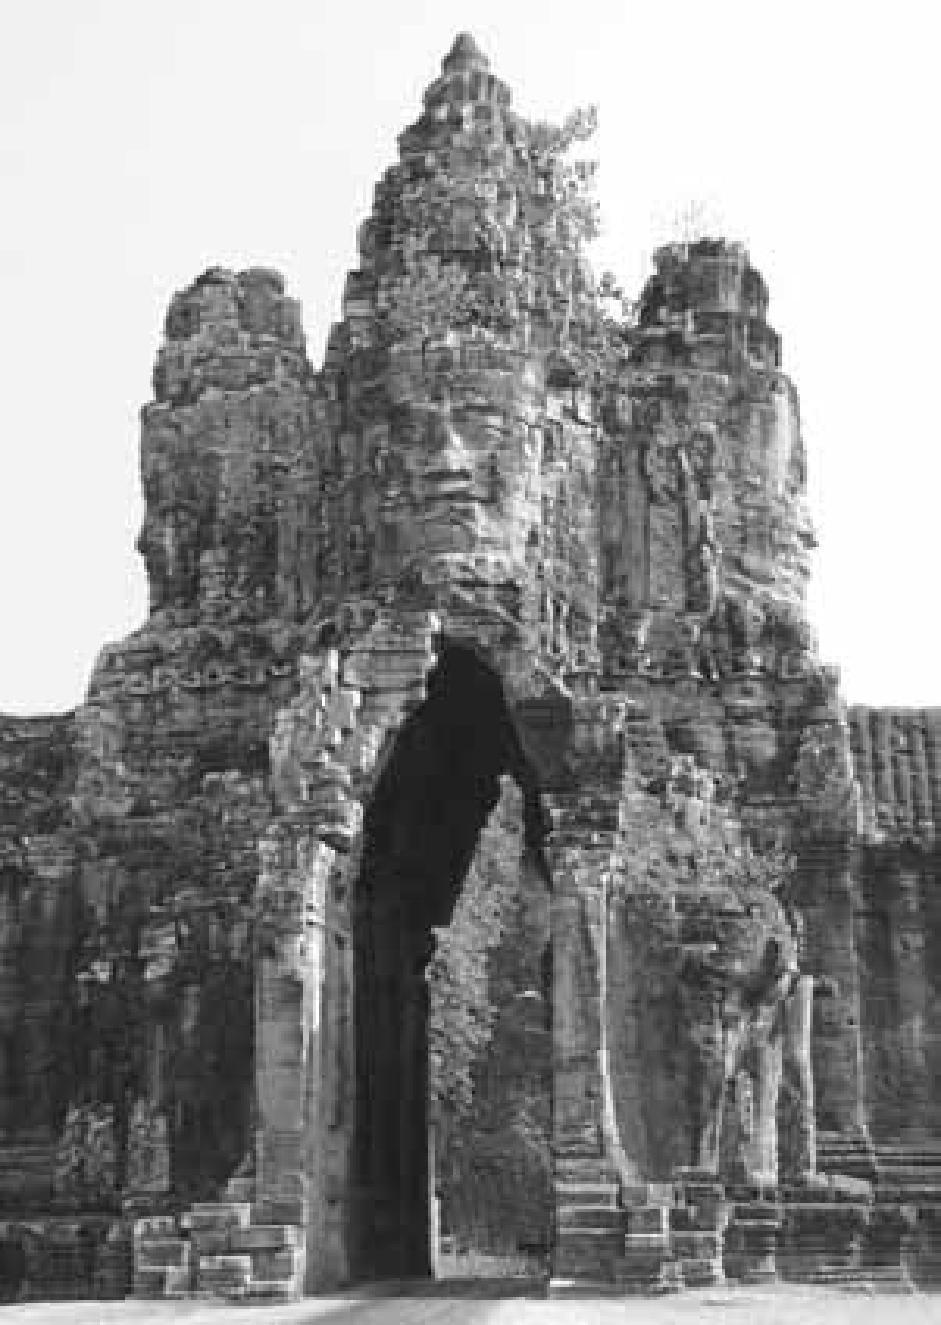 Jayavarman VII, trị vì từ 1181 đến 1215, Phật giáo đã gần như thay thế hoàn toàn vai trò của Ấn Độ giáo và vua Jayavarman VII đã xây một đền Phật giáo rất lớn là Angkor Thom ở gần đền Angkor Wat, đã